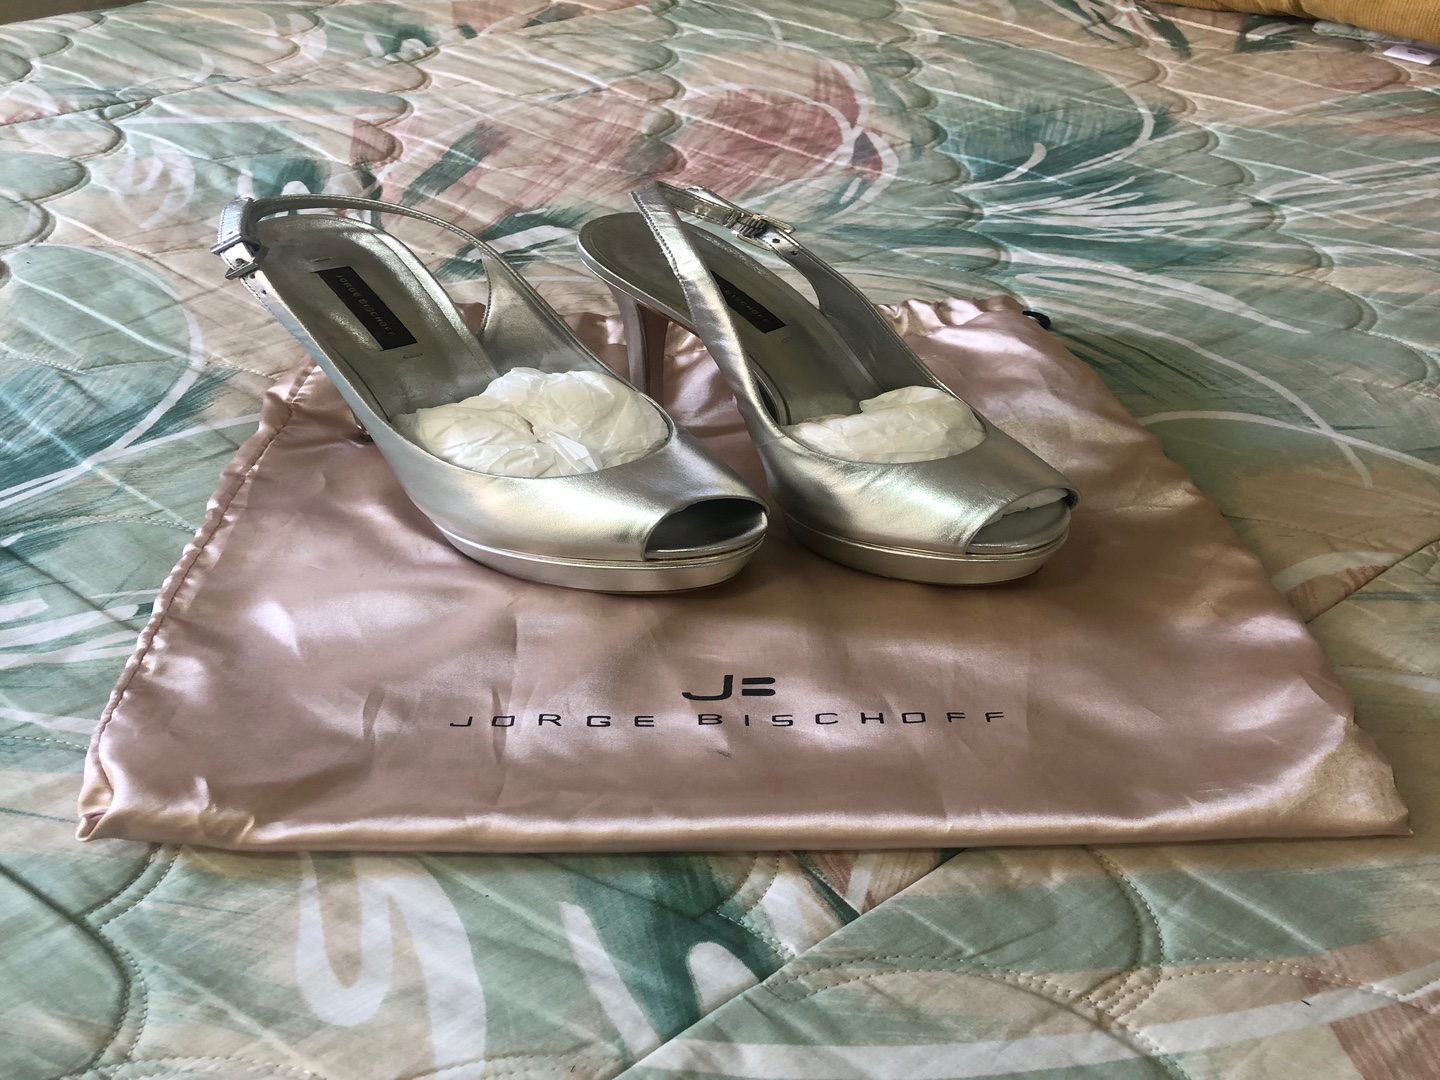 zapatos para mujer - Vendo Zapato marca Jorge Bisschoff como nuevo.  0